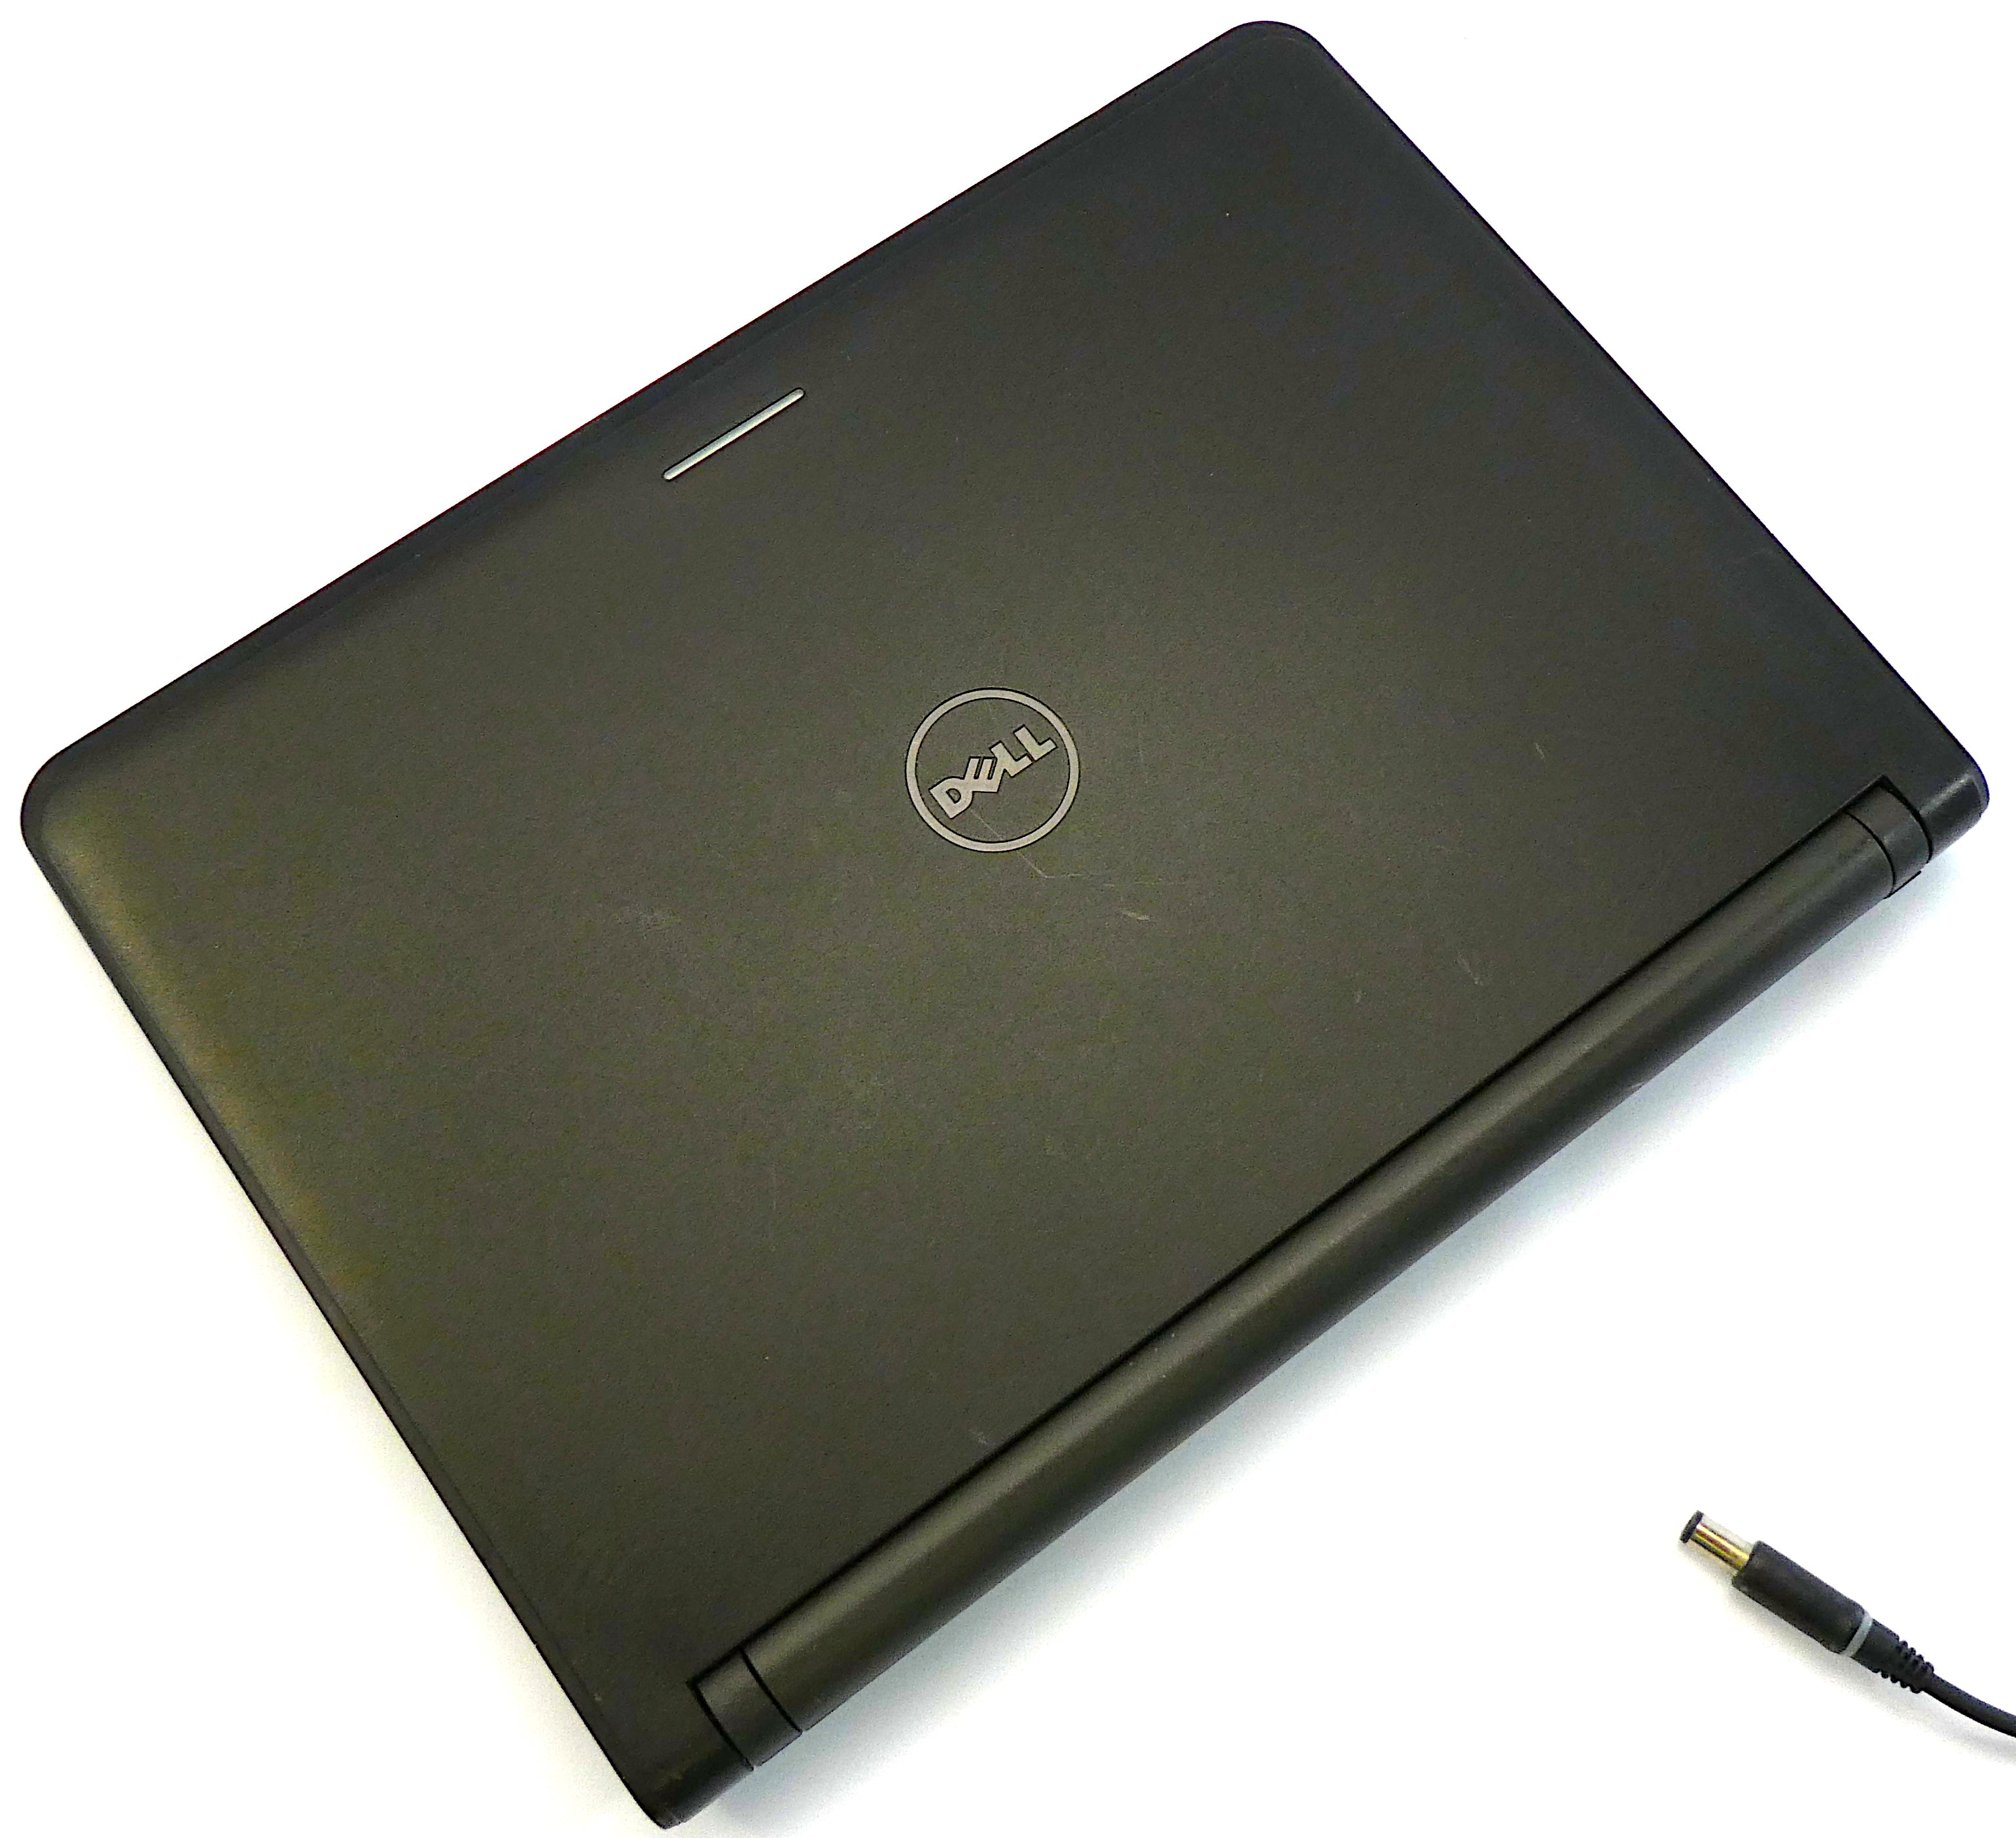 Dell Latitude 3340 Laptop, 13.2" Core i5 4th Gen, 8GB RAM, 256GB SSD